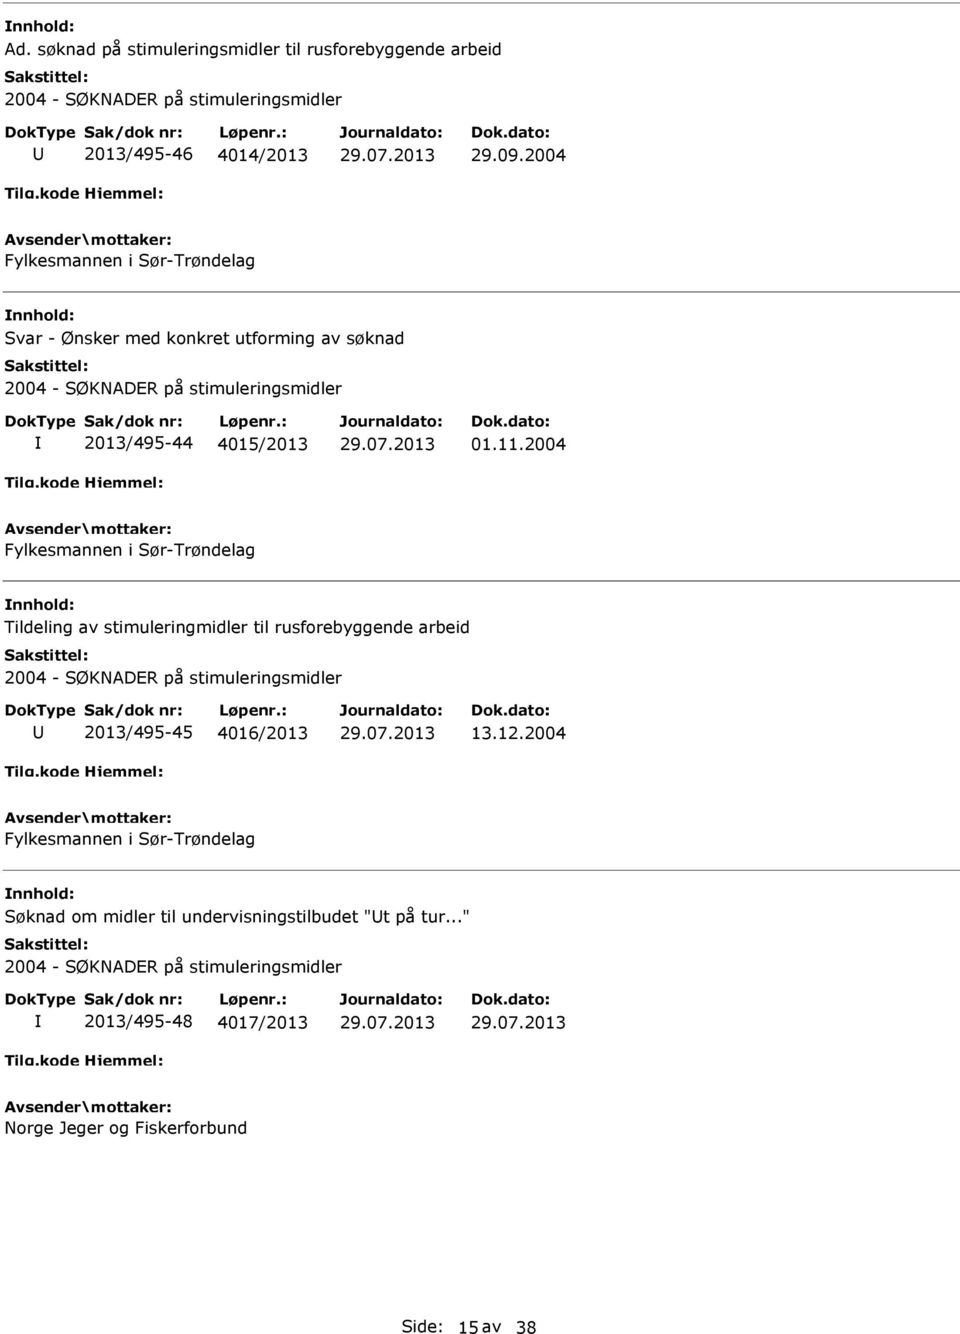 2004 Fylkesmannen i Sør-Trøndelag Tildeling av stimuleringmidler til rusforebyggende arbeid 2013/495-45 4016/2013 13.